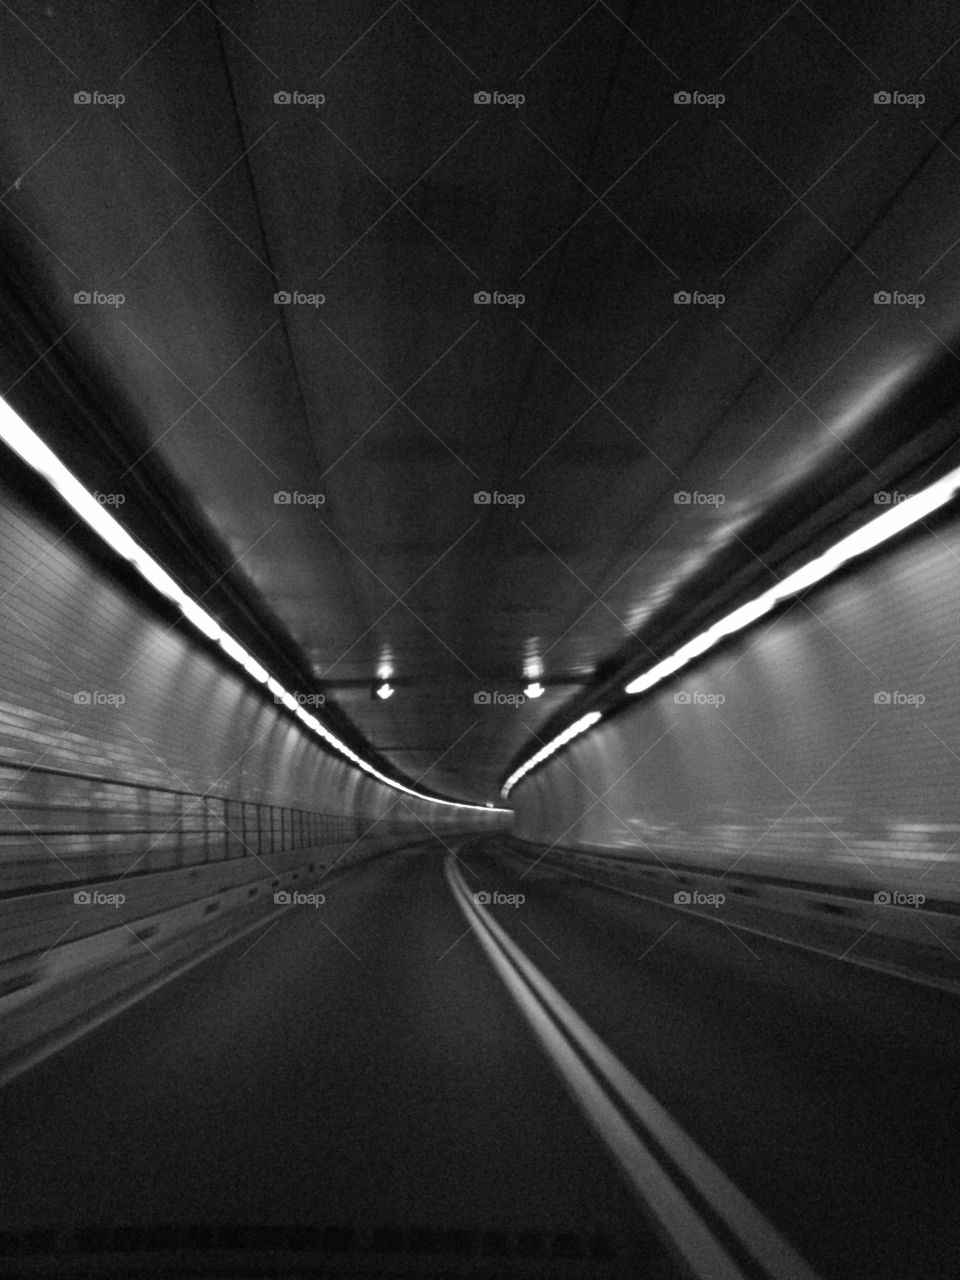 Car Tunnel